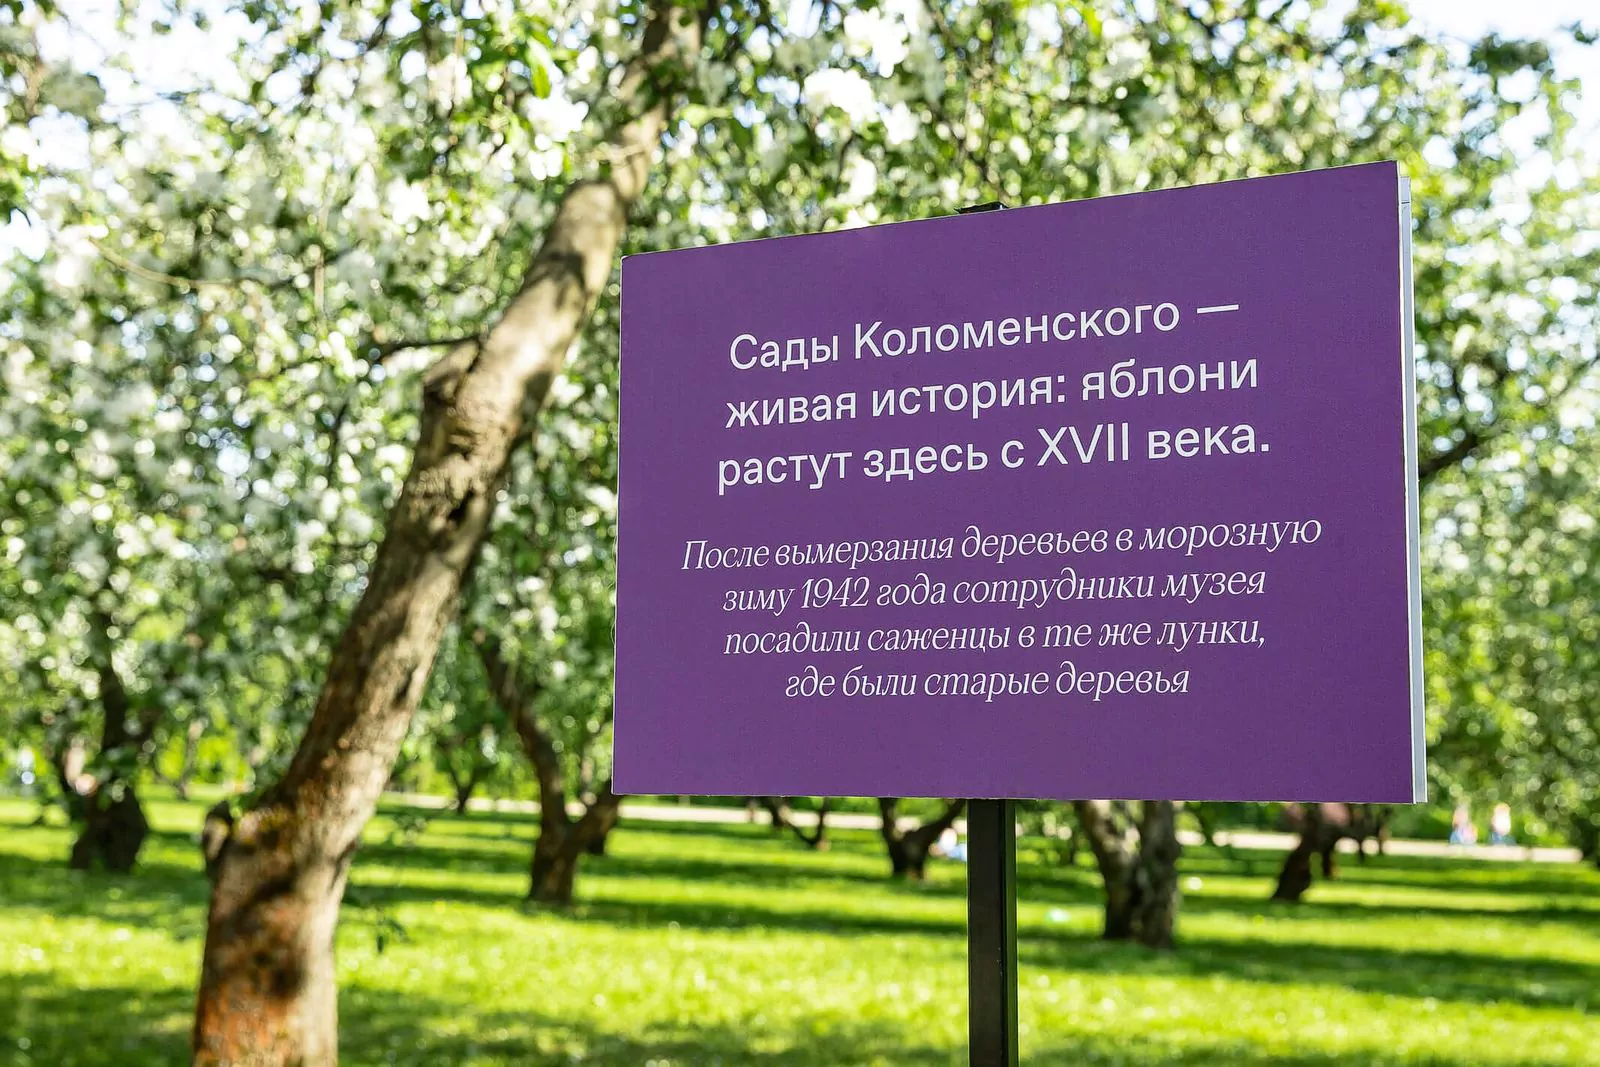 Фотопроект в честь яблоневых садов музея-заповедника «Коломенское», фото 2